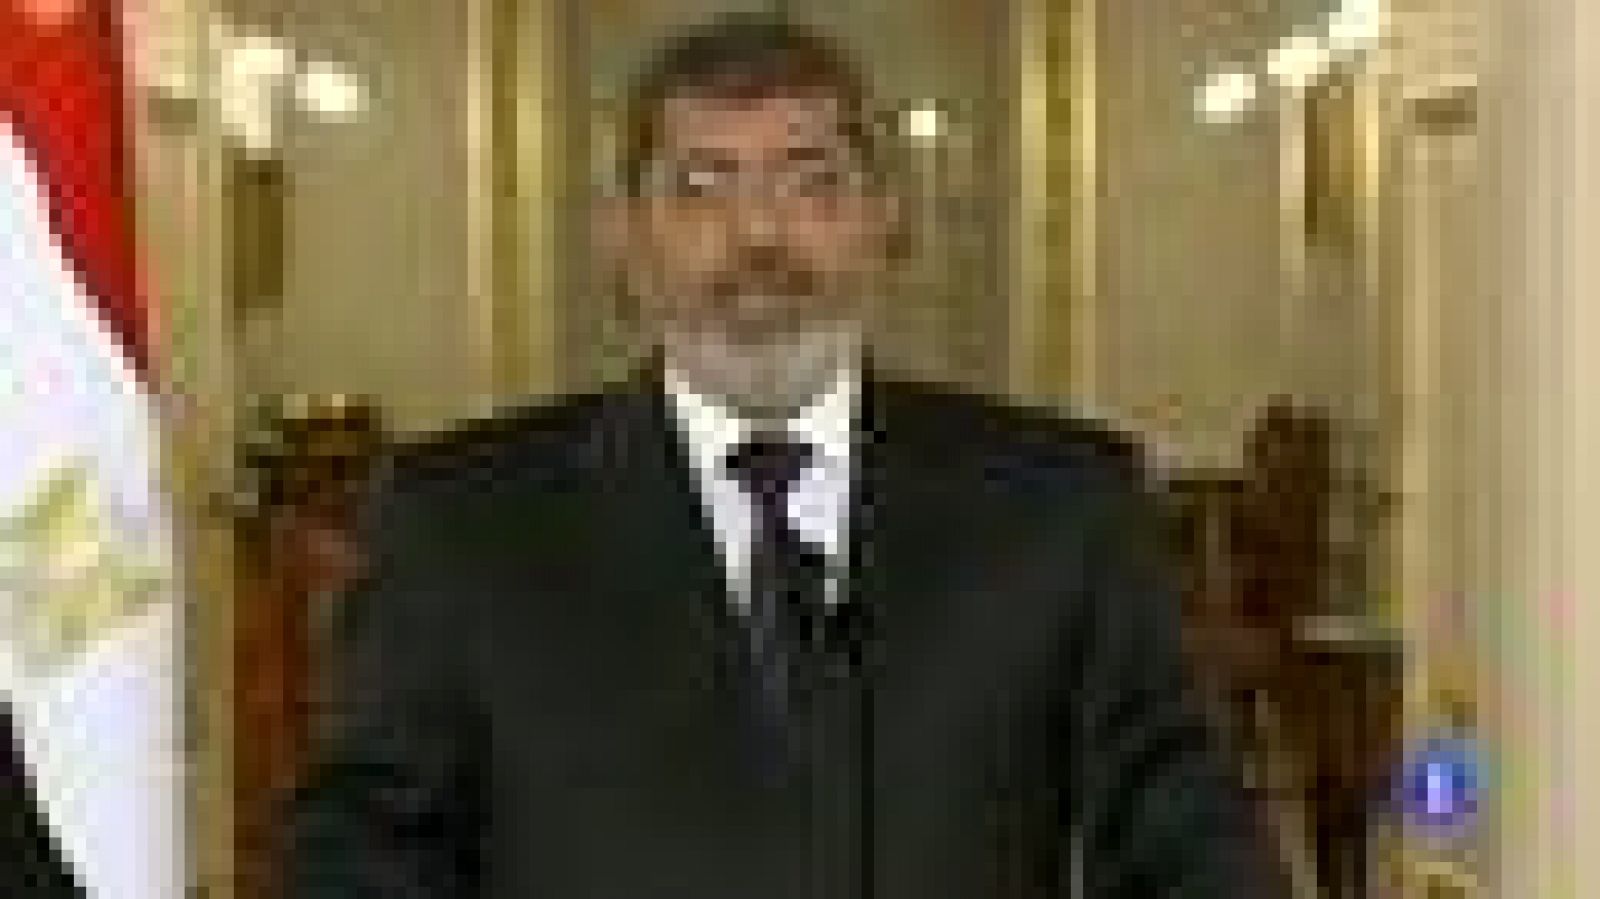 Morsi da más poderes al ejército para que ejerzan de antidisturbios